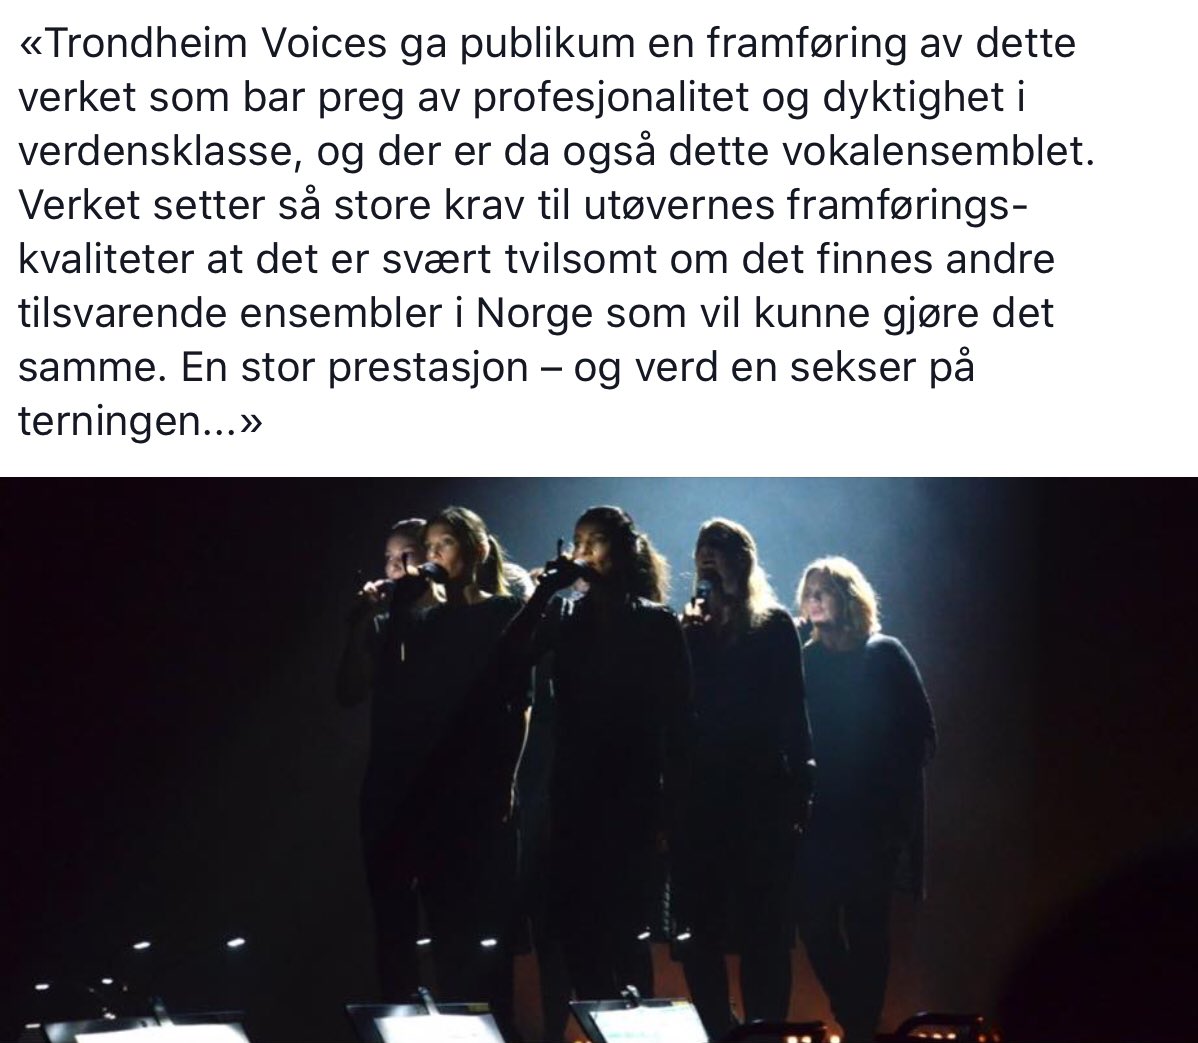 Avisa Nordland om Trondheim Voices sin framføring av Ekkokammer 2.0 på Stormen sitt femårsjubileum under Nordic Music Days. Tusen takk!